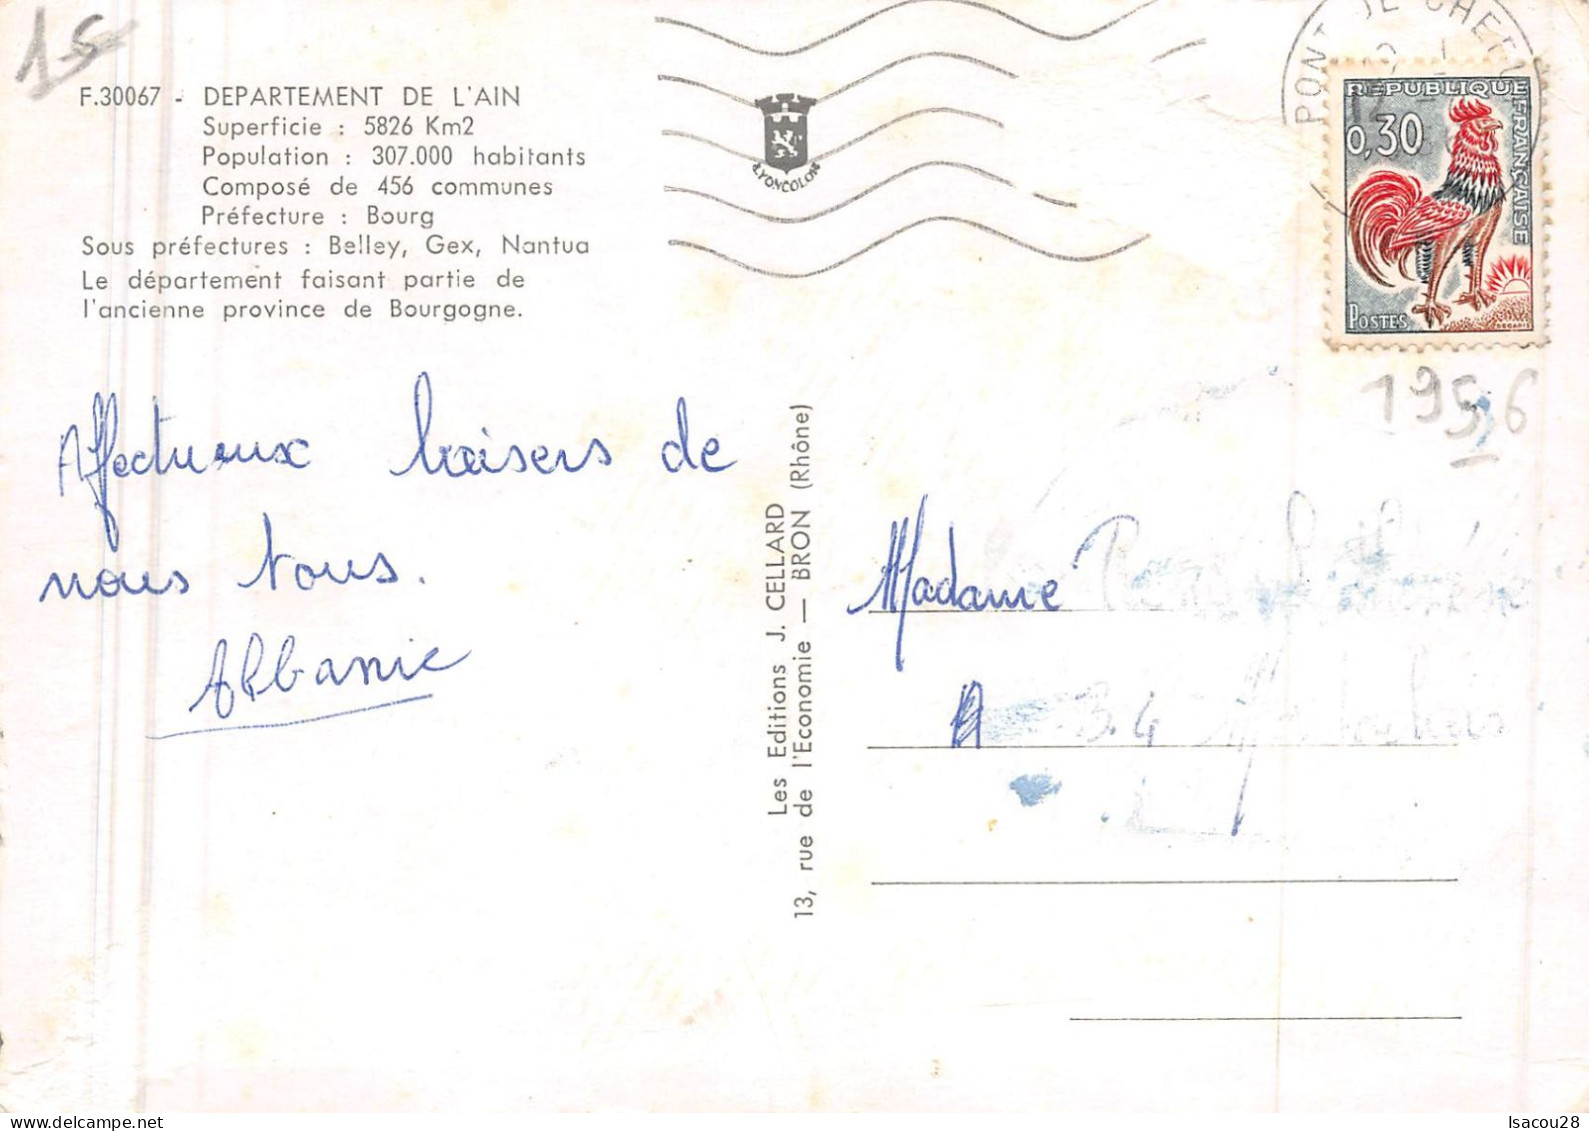 01 - Ain - Carte De Département Avec Vues Ancienne Province De Bourgogne - 1956 - Editions Cellard - Unclassified